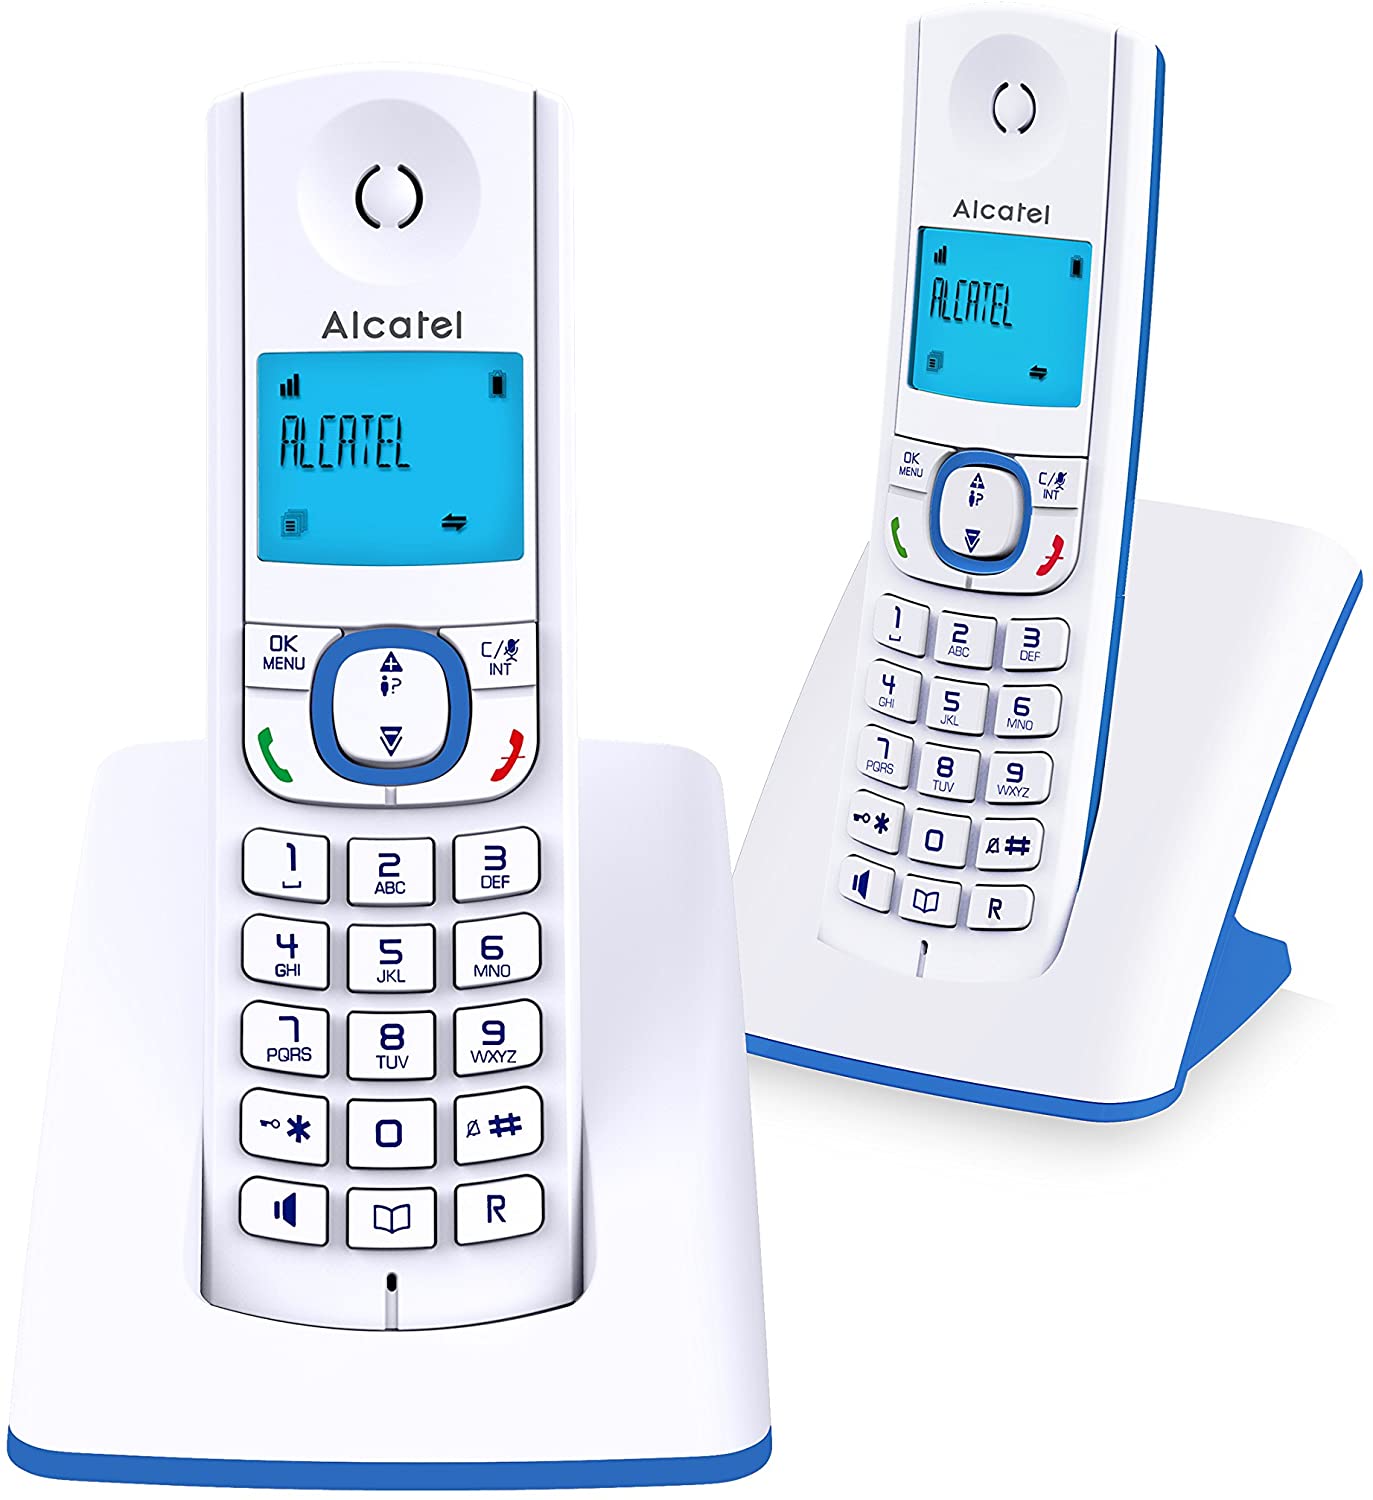 Teléfono Inalámbricos Motorola Dúo M750-2